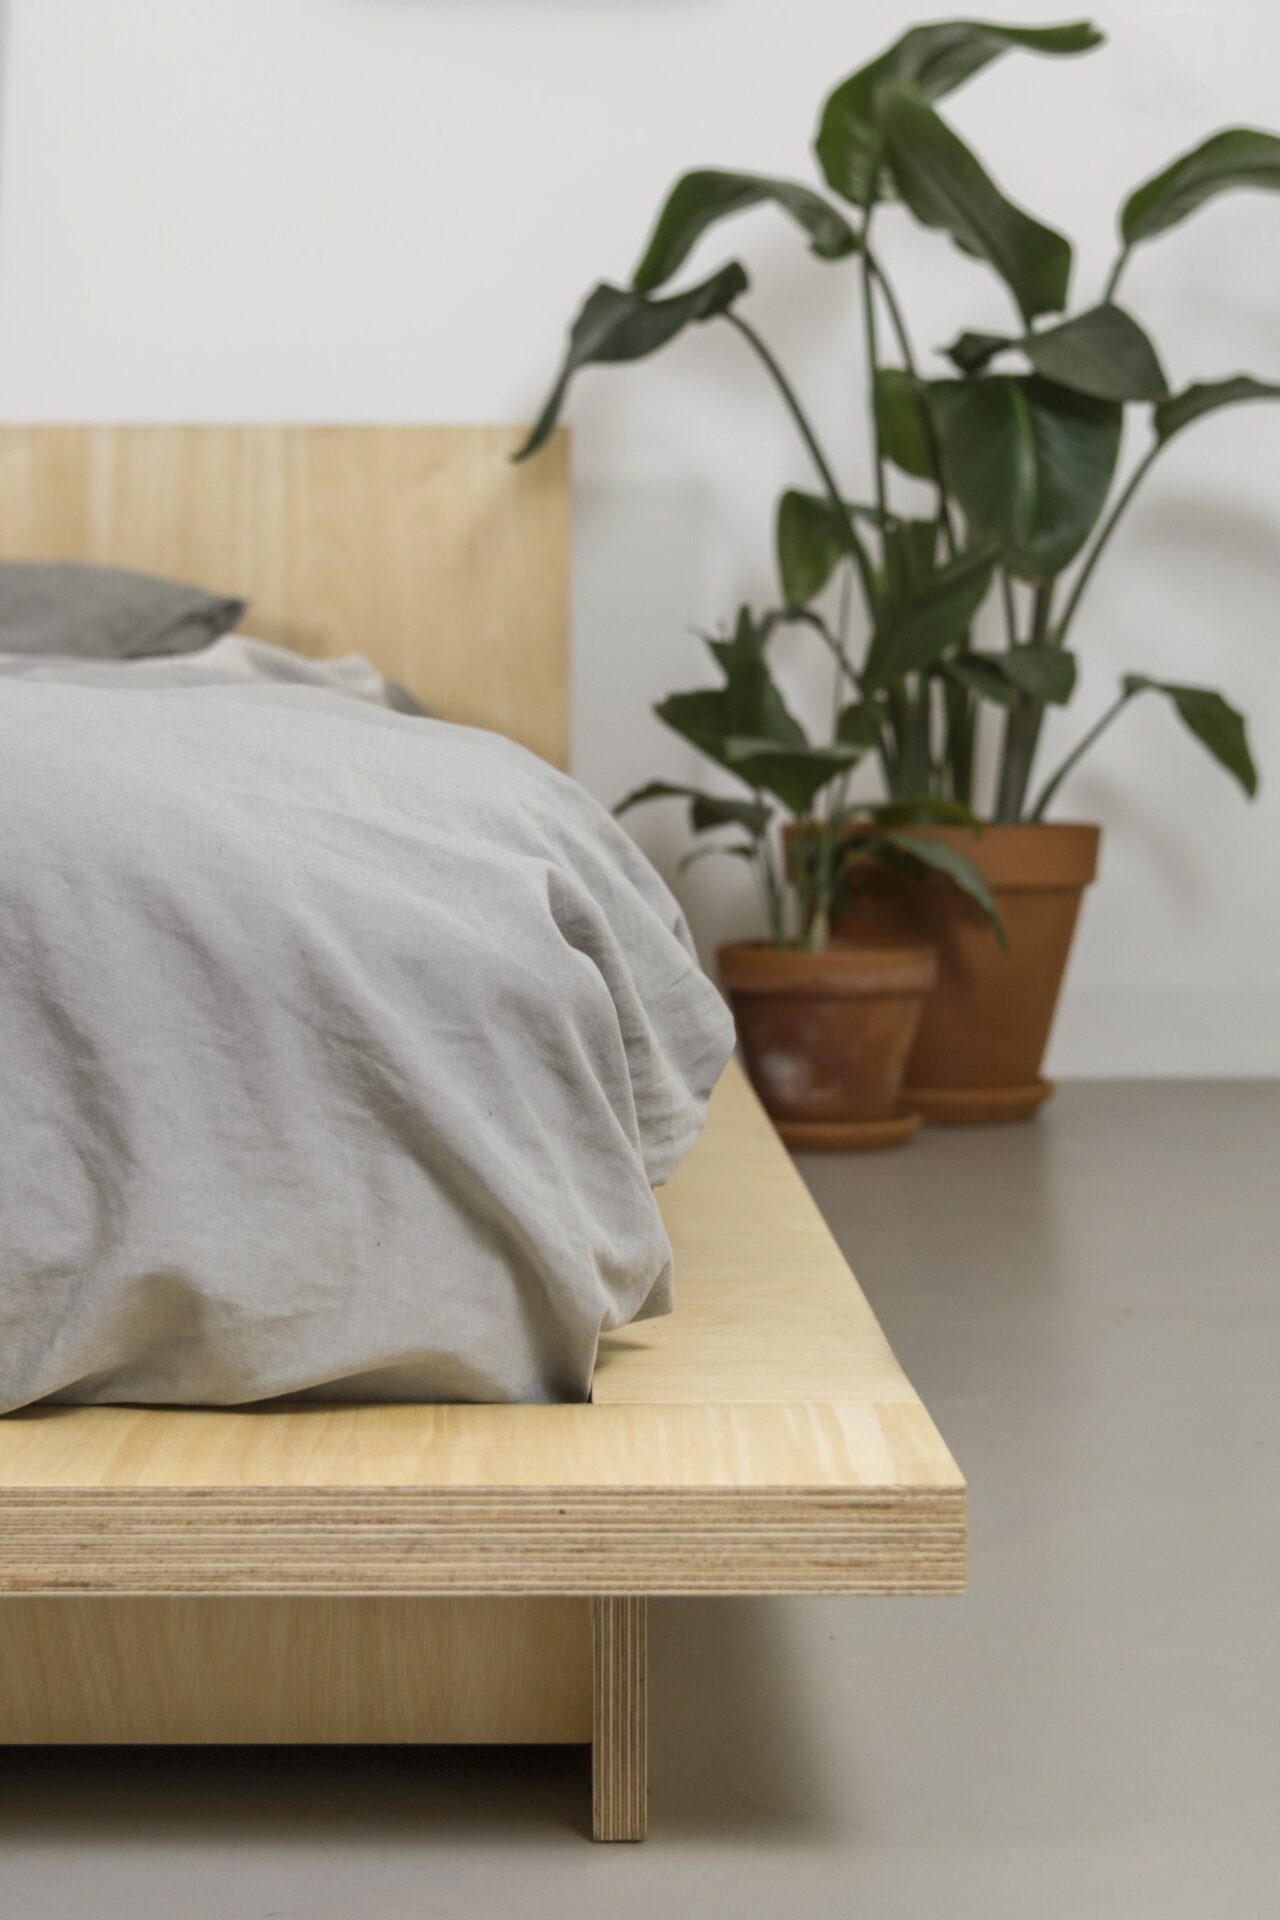 minimalistyczny łóżkoze sklejki, łóżko w stylu japandi, japandi bed, łóżko japandi meble minimalistyczne, meble w stylu japońskim, meble ze sklejki brzozowej, meble w stylu japandi, meble w stylu minimalistycznym